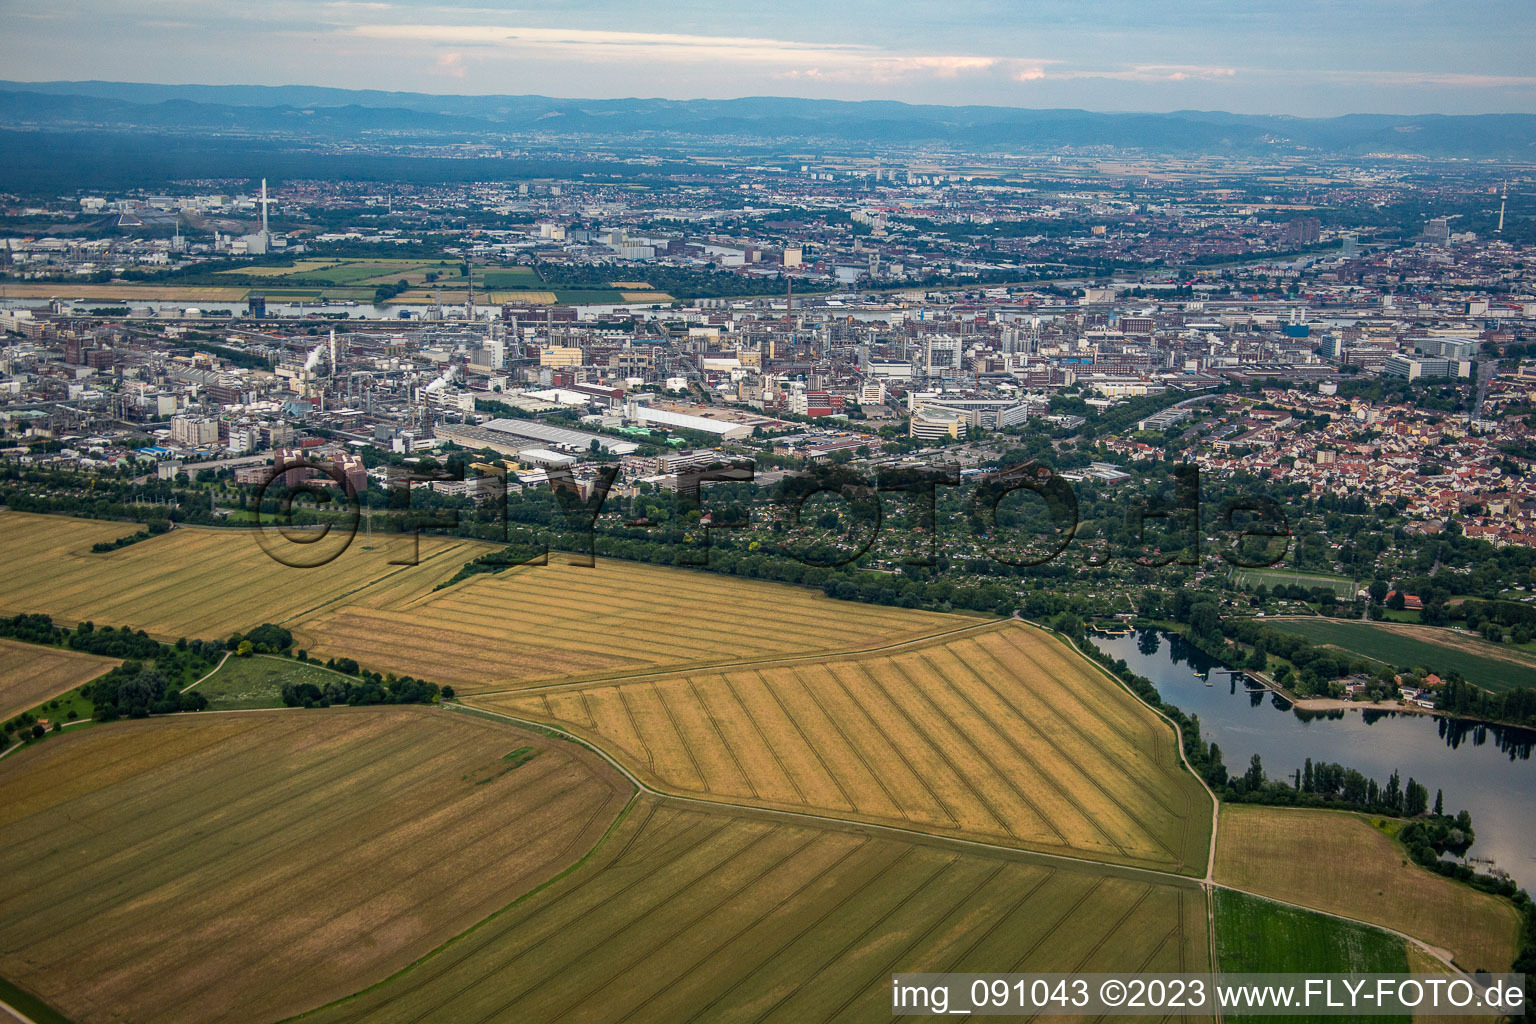 Luftbild von BASF von Westen im Ortsteil Friesenheim in Ludwigshafen am Rhein im Bundesland Rheinland-Pfalz, Deutschland